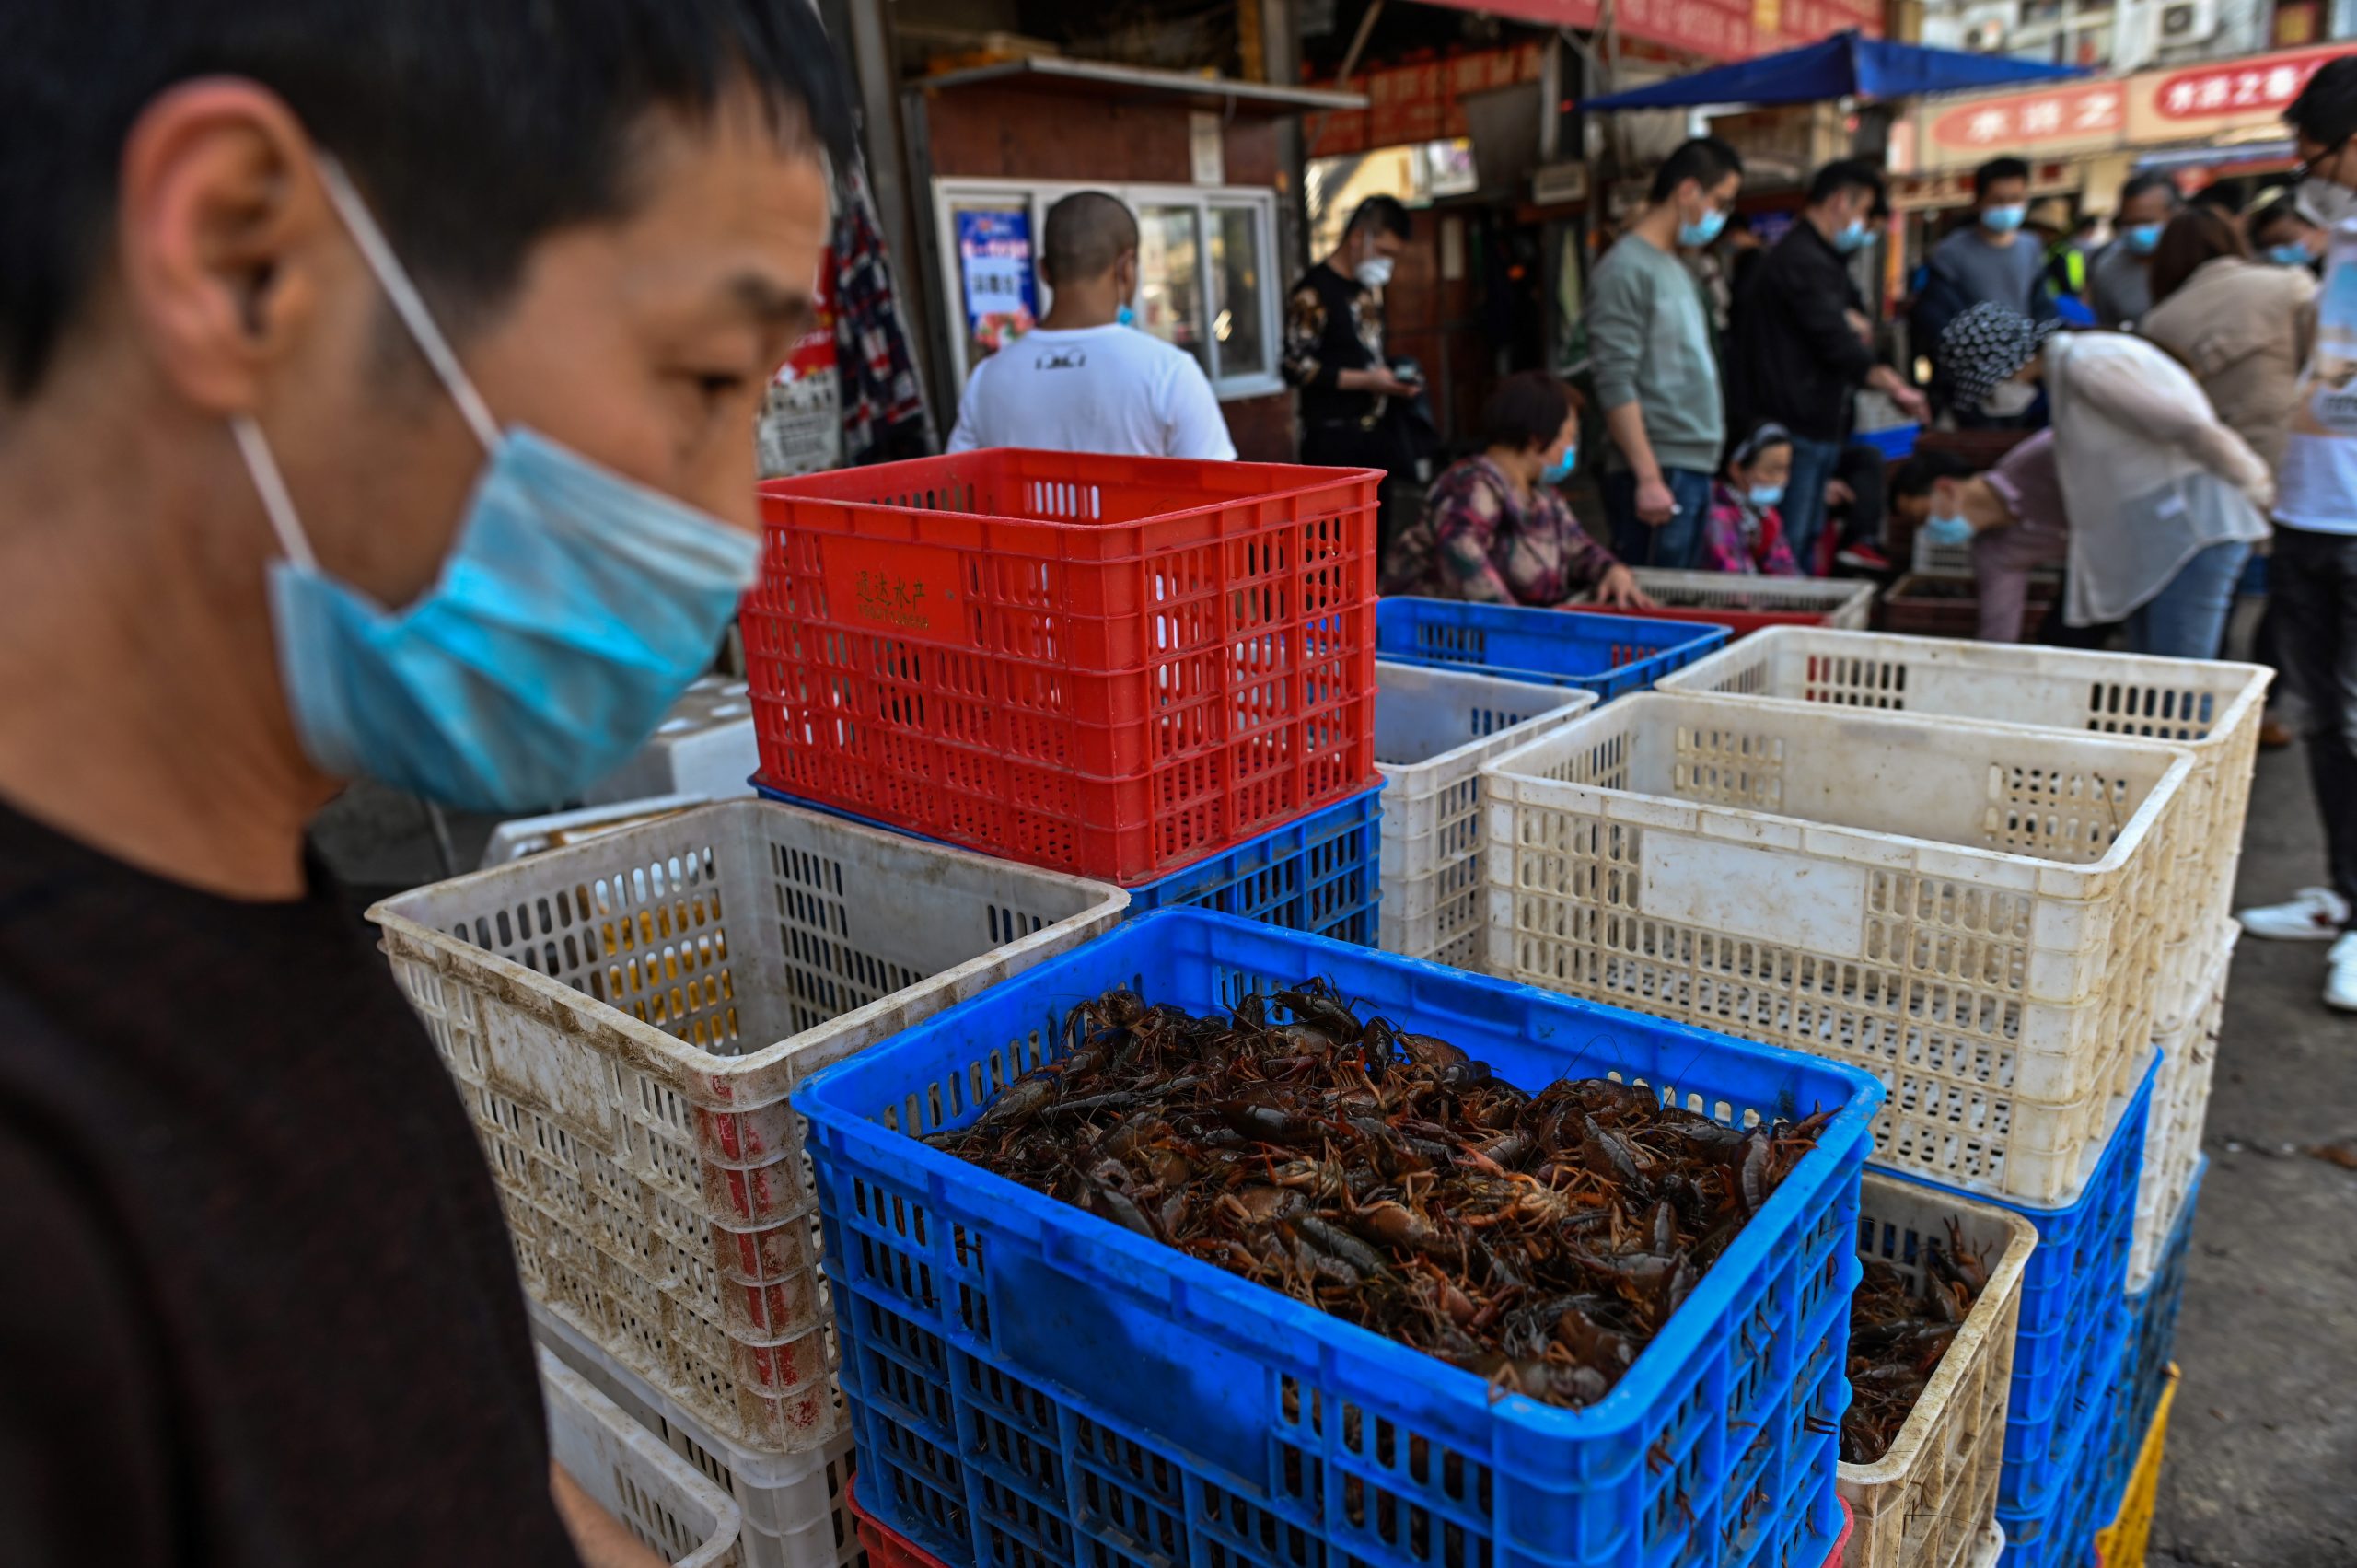 Mercados de alimentos en Wuhan, China luchan contra el coronavirus